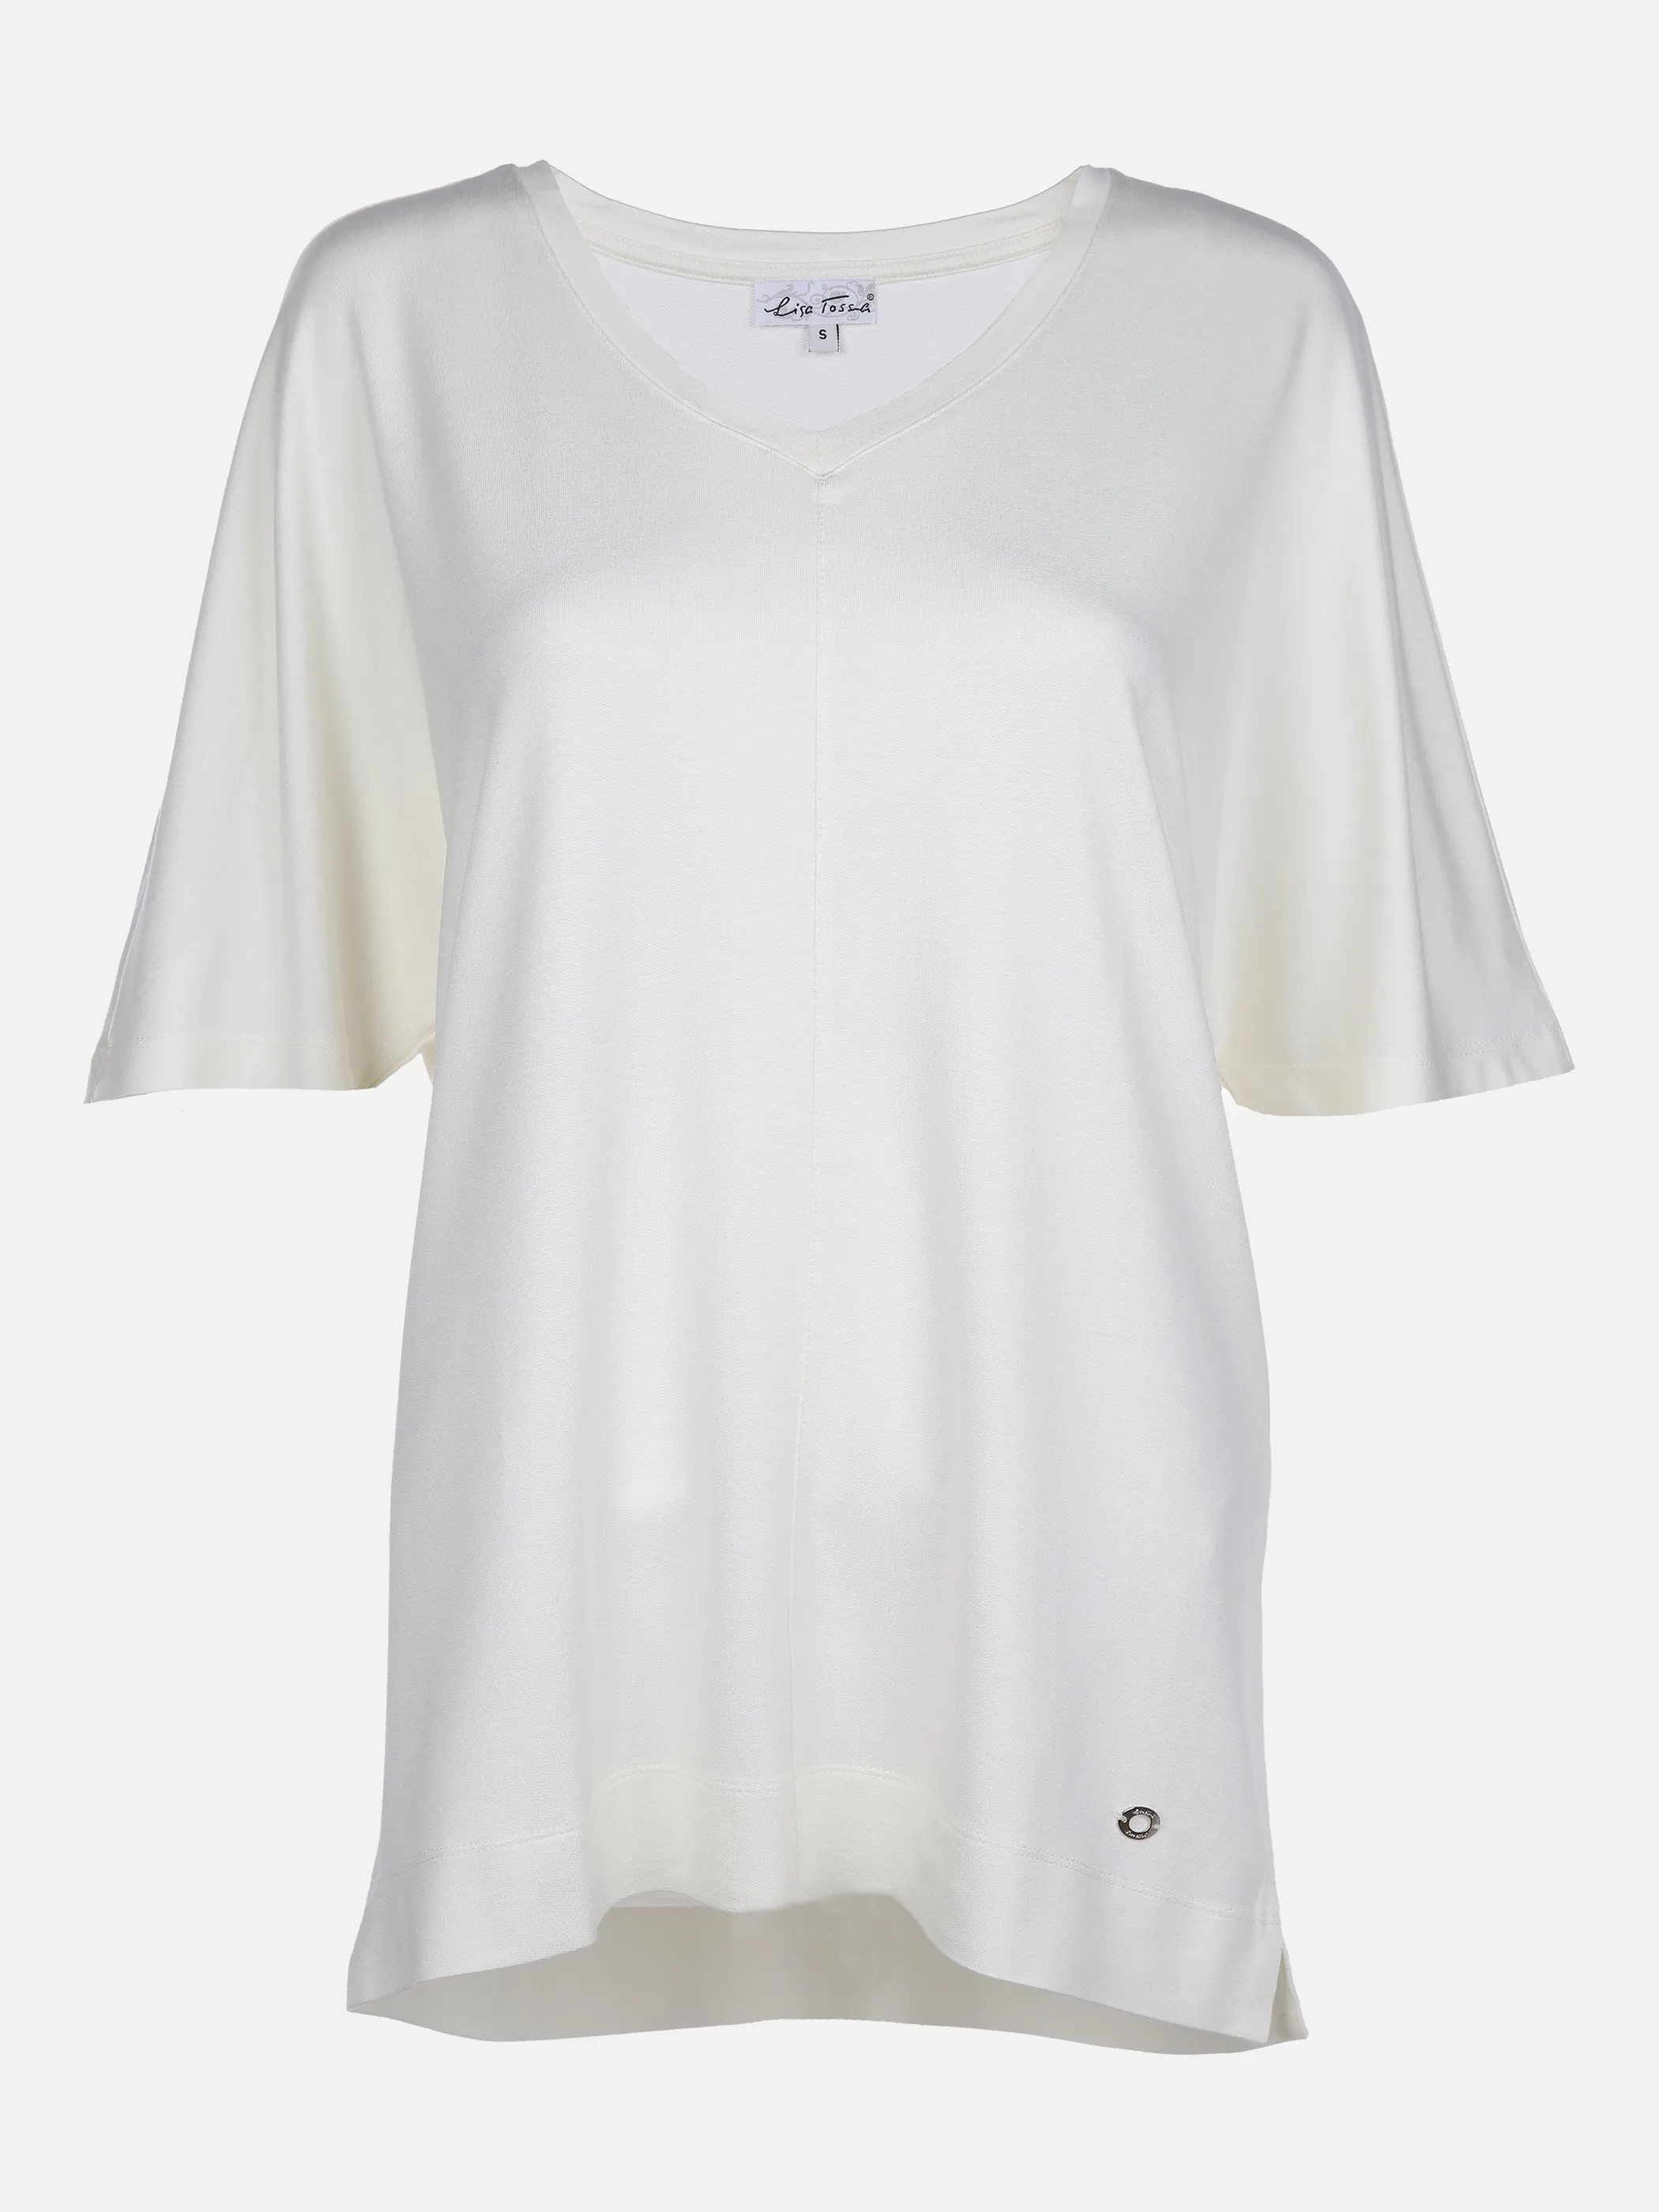 Lisa Tossa Da-T-Shirt m. V-Ausschnitt Weiß 866116 OFFWHITE 1